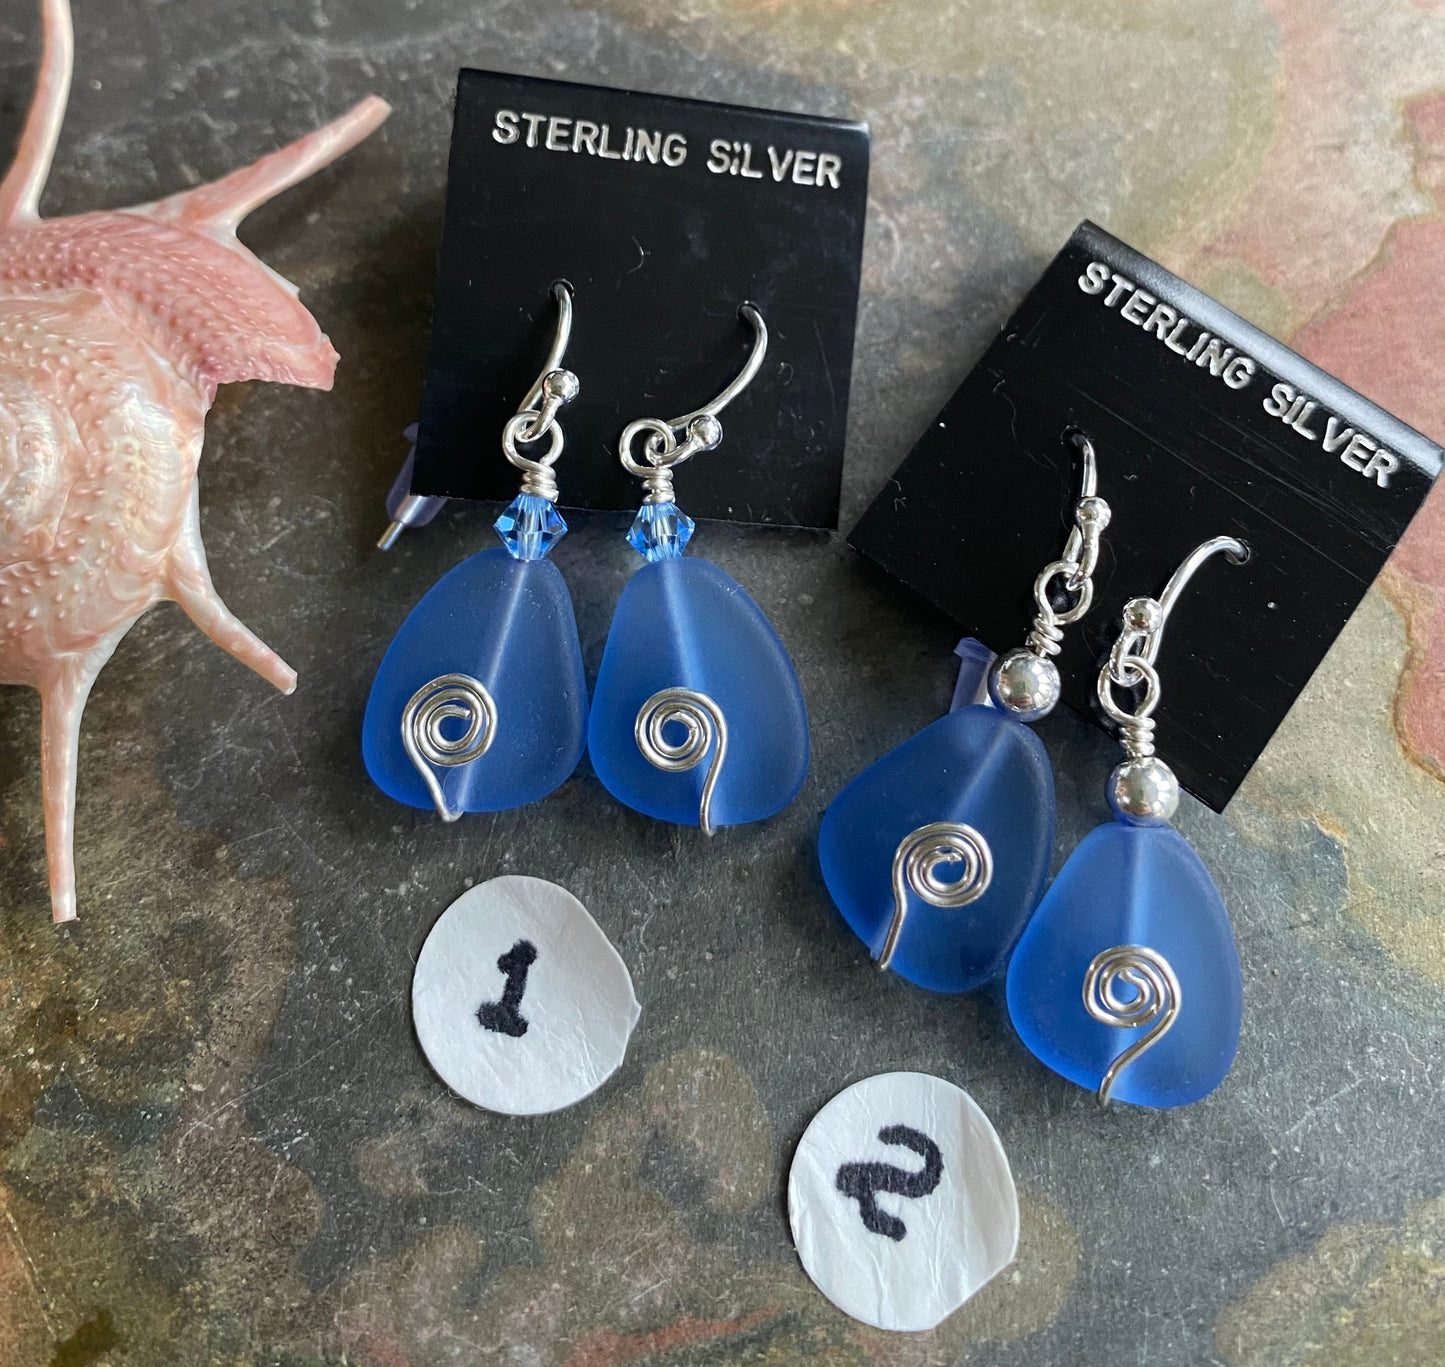 Sea Glass Earrings,Light Blue Sea Glass Earrings in STERLING SILVER, Beach Glass Jewelry, Sea glass Dangling Earrings,Beach Wedding Jewelry